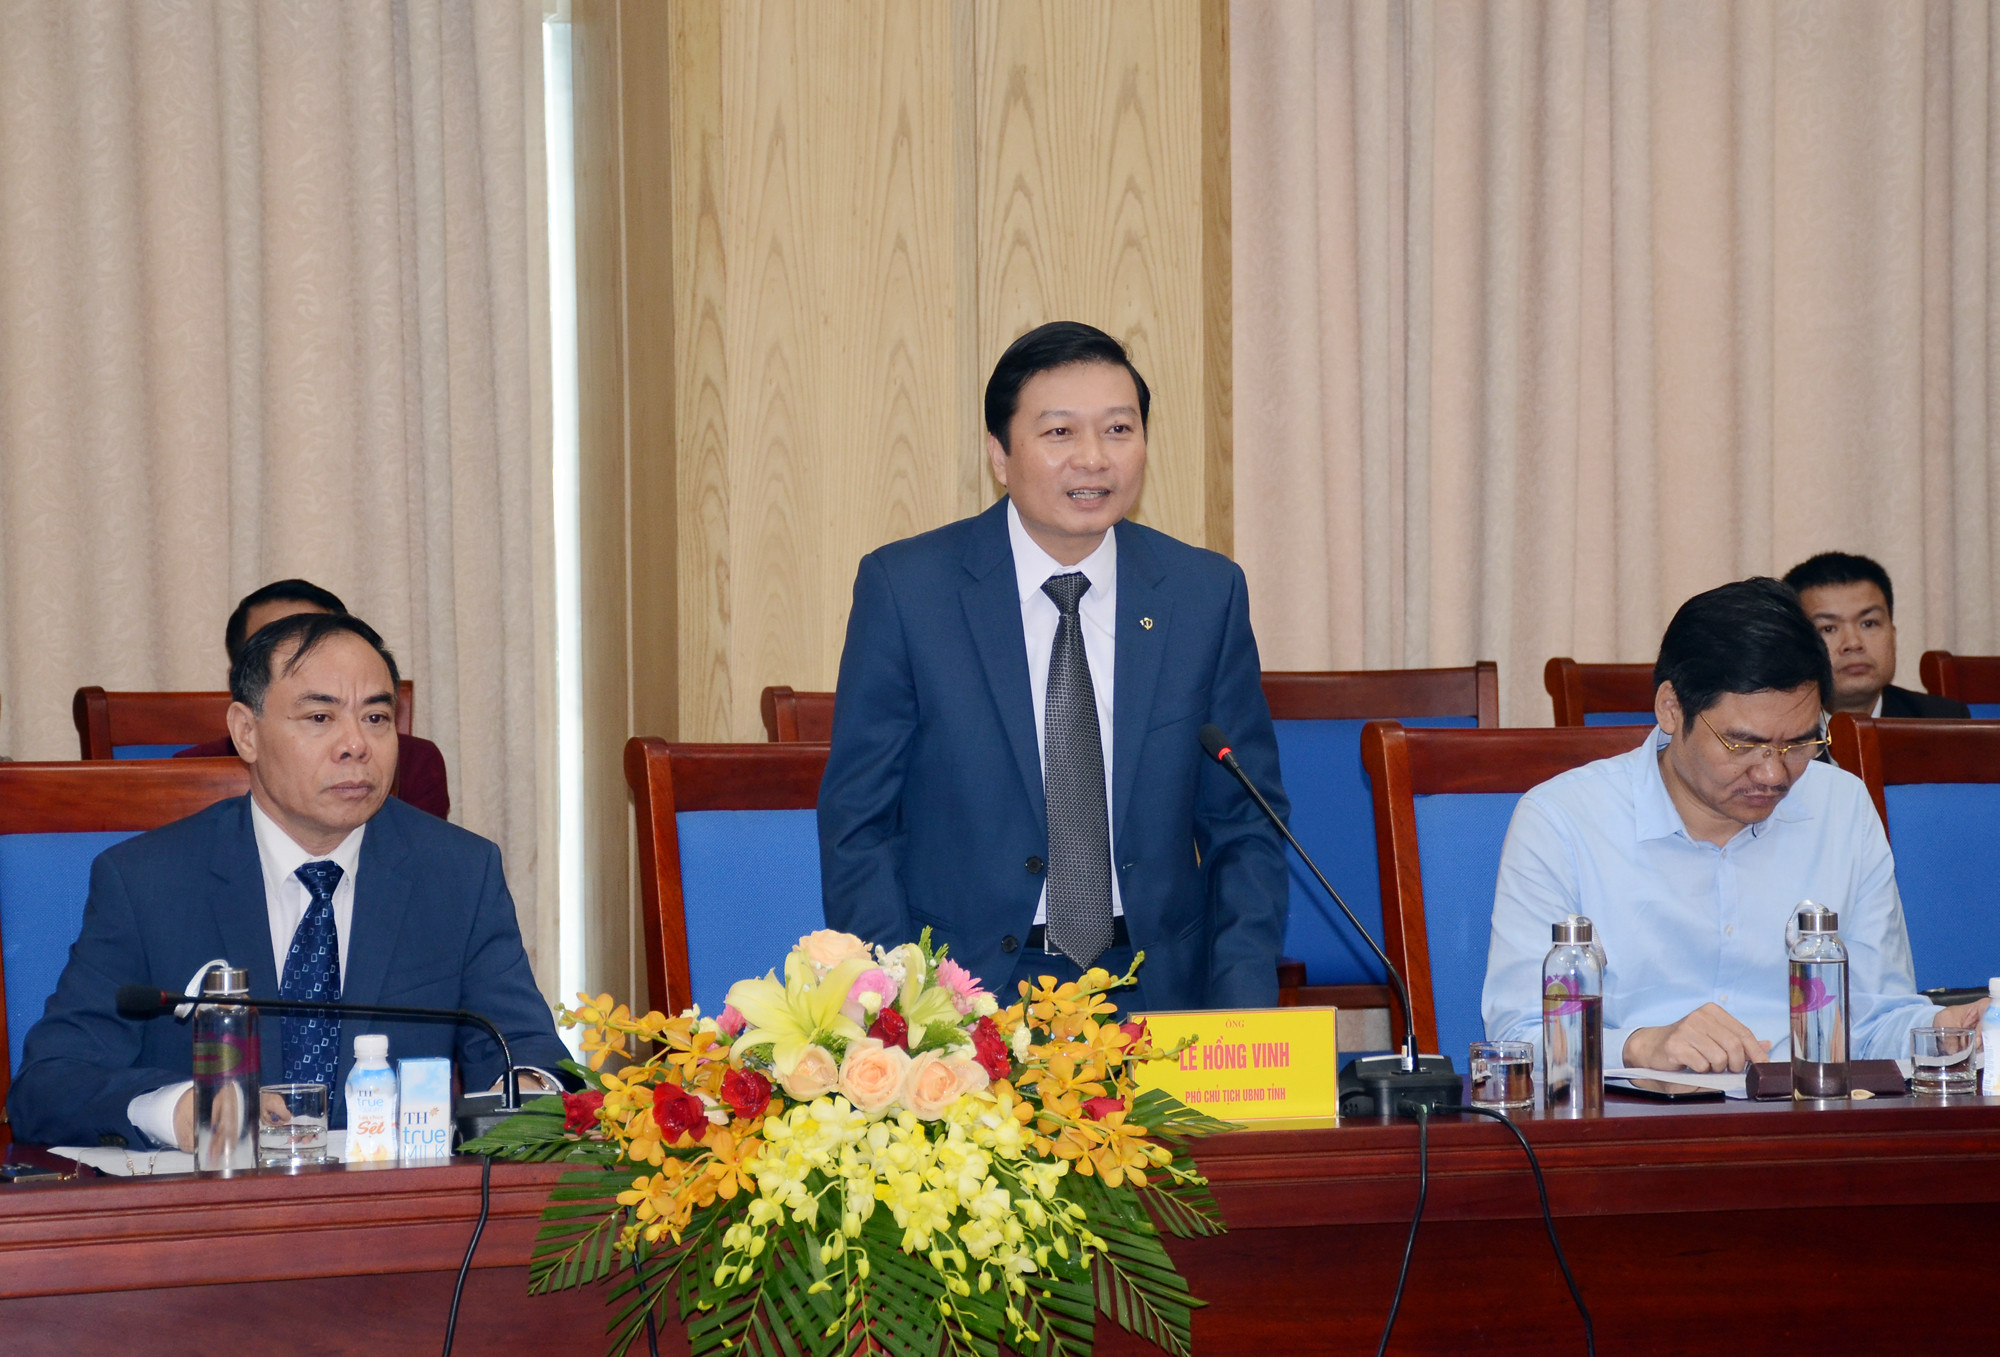 Đồng chí Lê Hồng Vinh đánh giá cao những nỗ lực, đóng góp của Công ty Cổ phần Tập đoàn TH trong công cuộc phát triển tỉnh nhà. Ảnh: Thành Chung